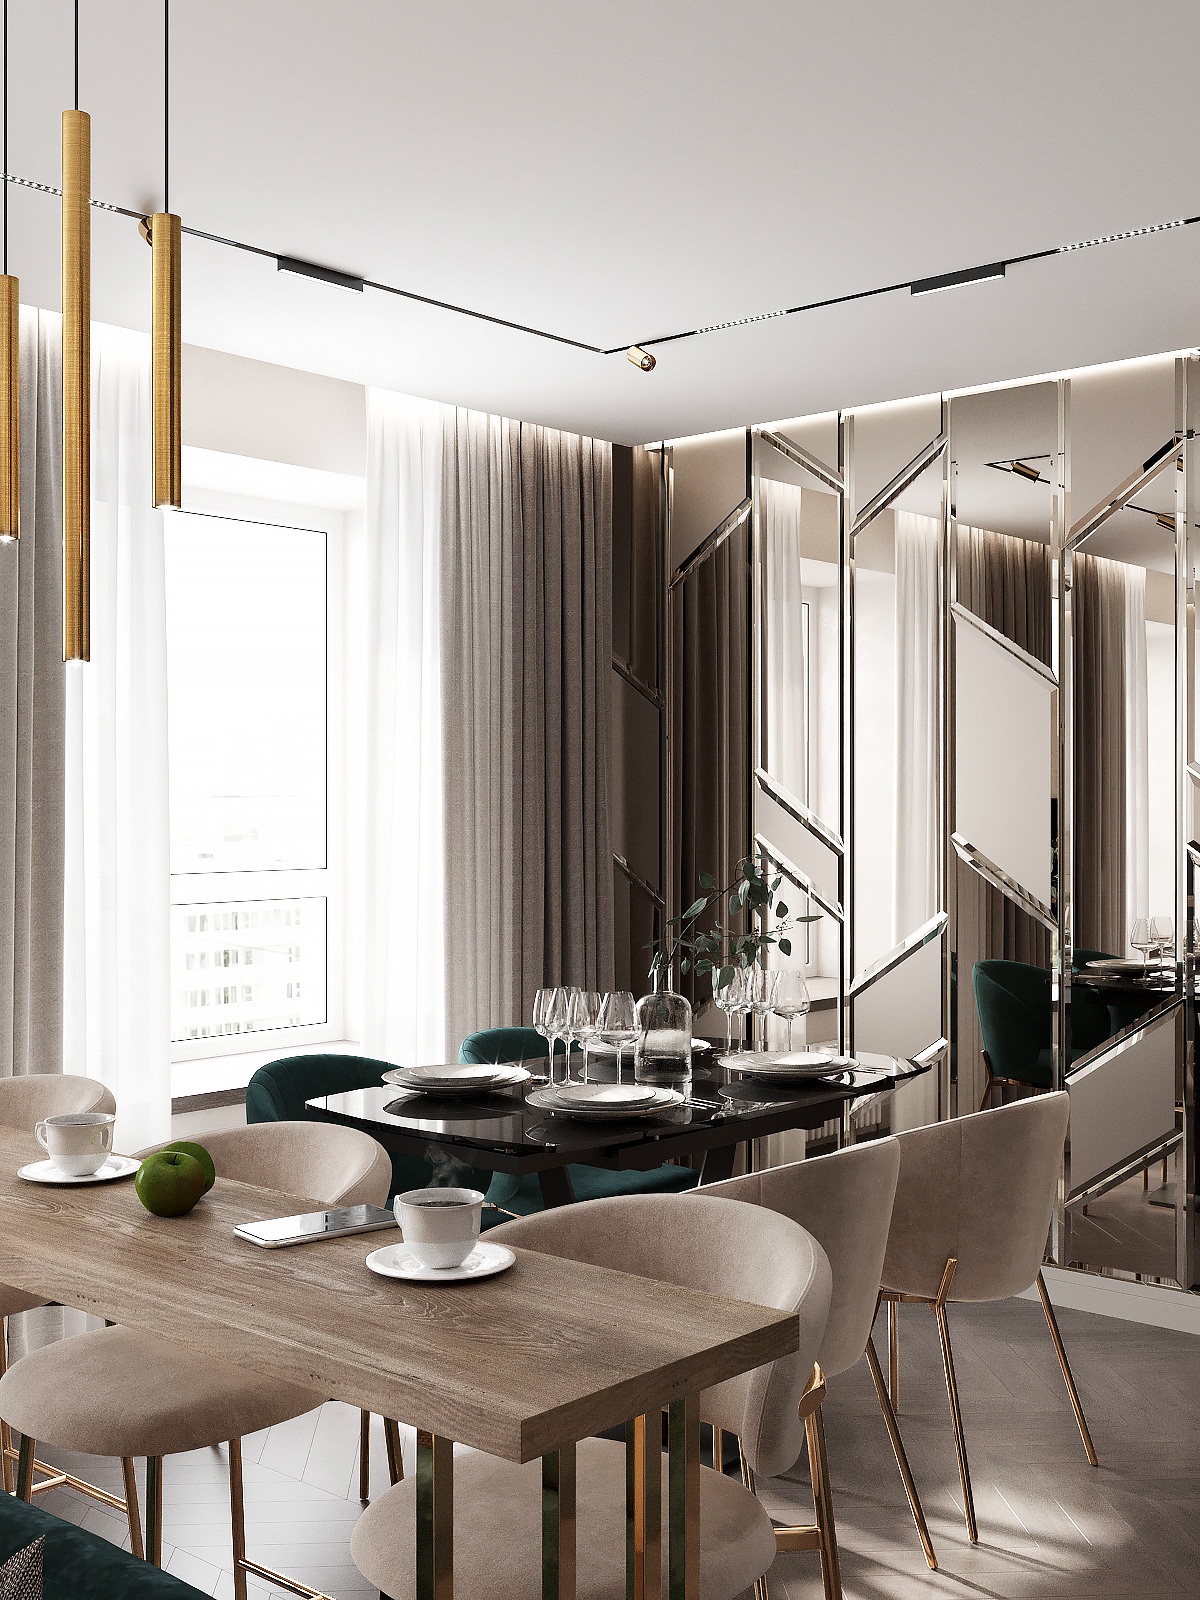 3д визуализация Interior Visualization 3ds max visualization living room 3д визуализатор Визуализация интерьера Дизайн квартиры кухня-гостиная современный дизайн